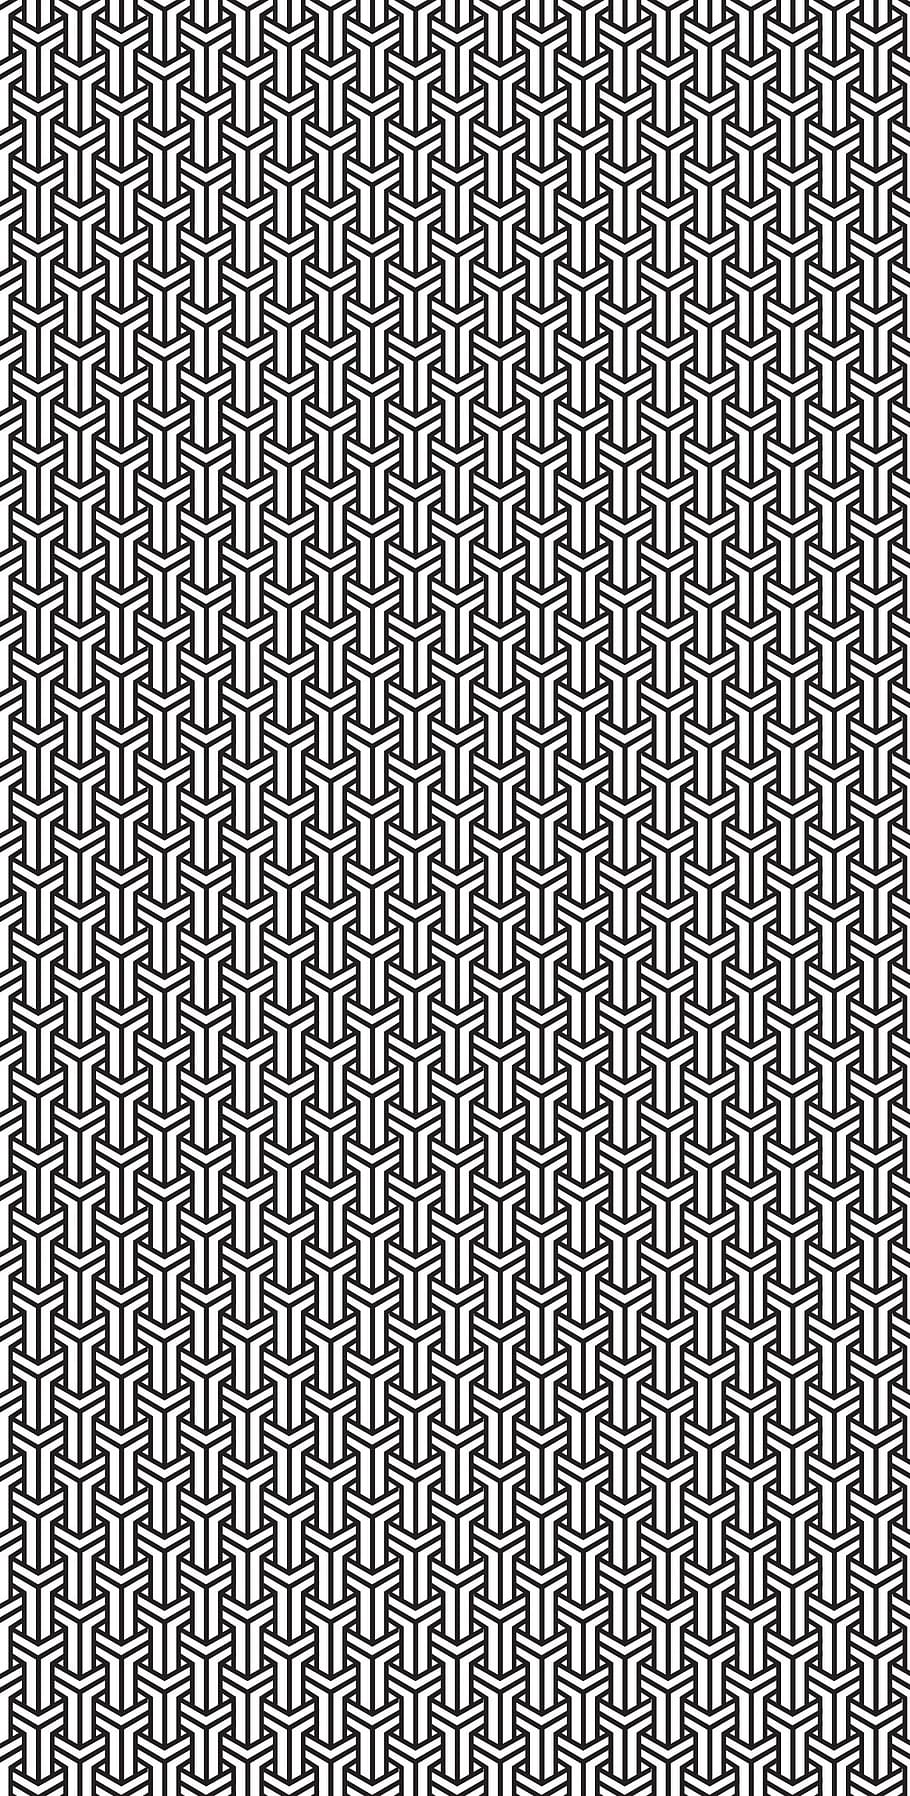 patrón, negro, blanco, azulejo, entrelazado, diseño, geométrico, repetir, forma, simetría